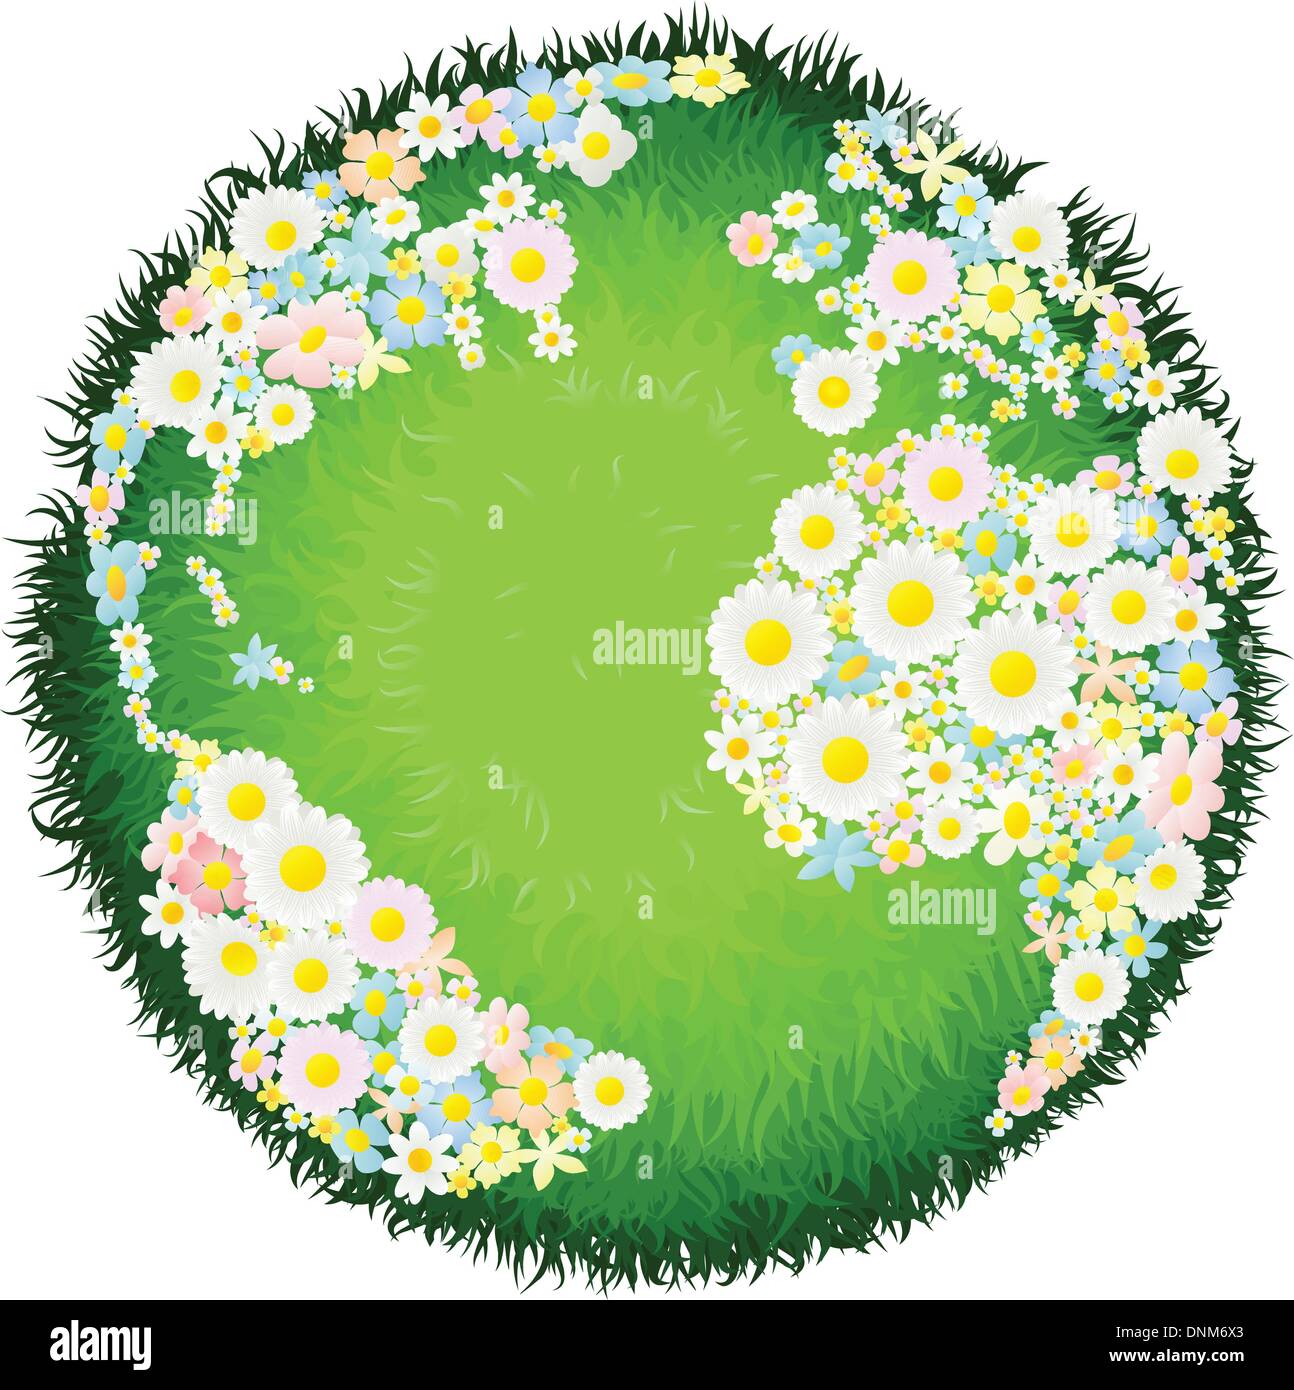 Un mondo globo terrestre con continenti fatto di fiori e mari come l'erba. Concetto per questioni ambientali o la pace. Illustrazione Vettoriale